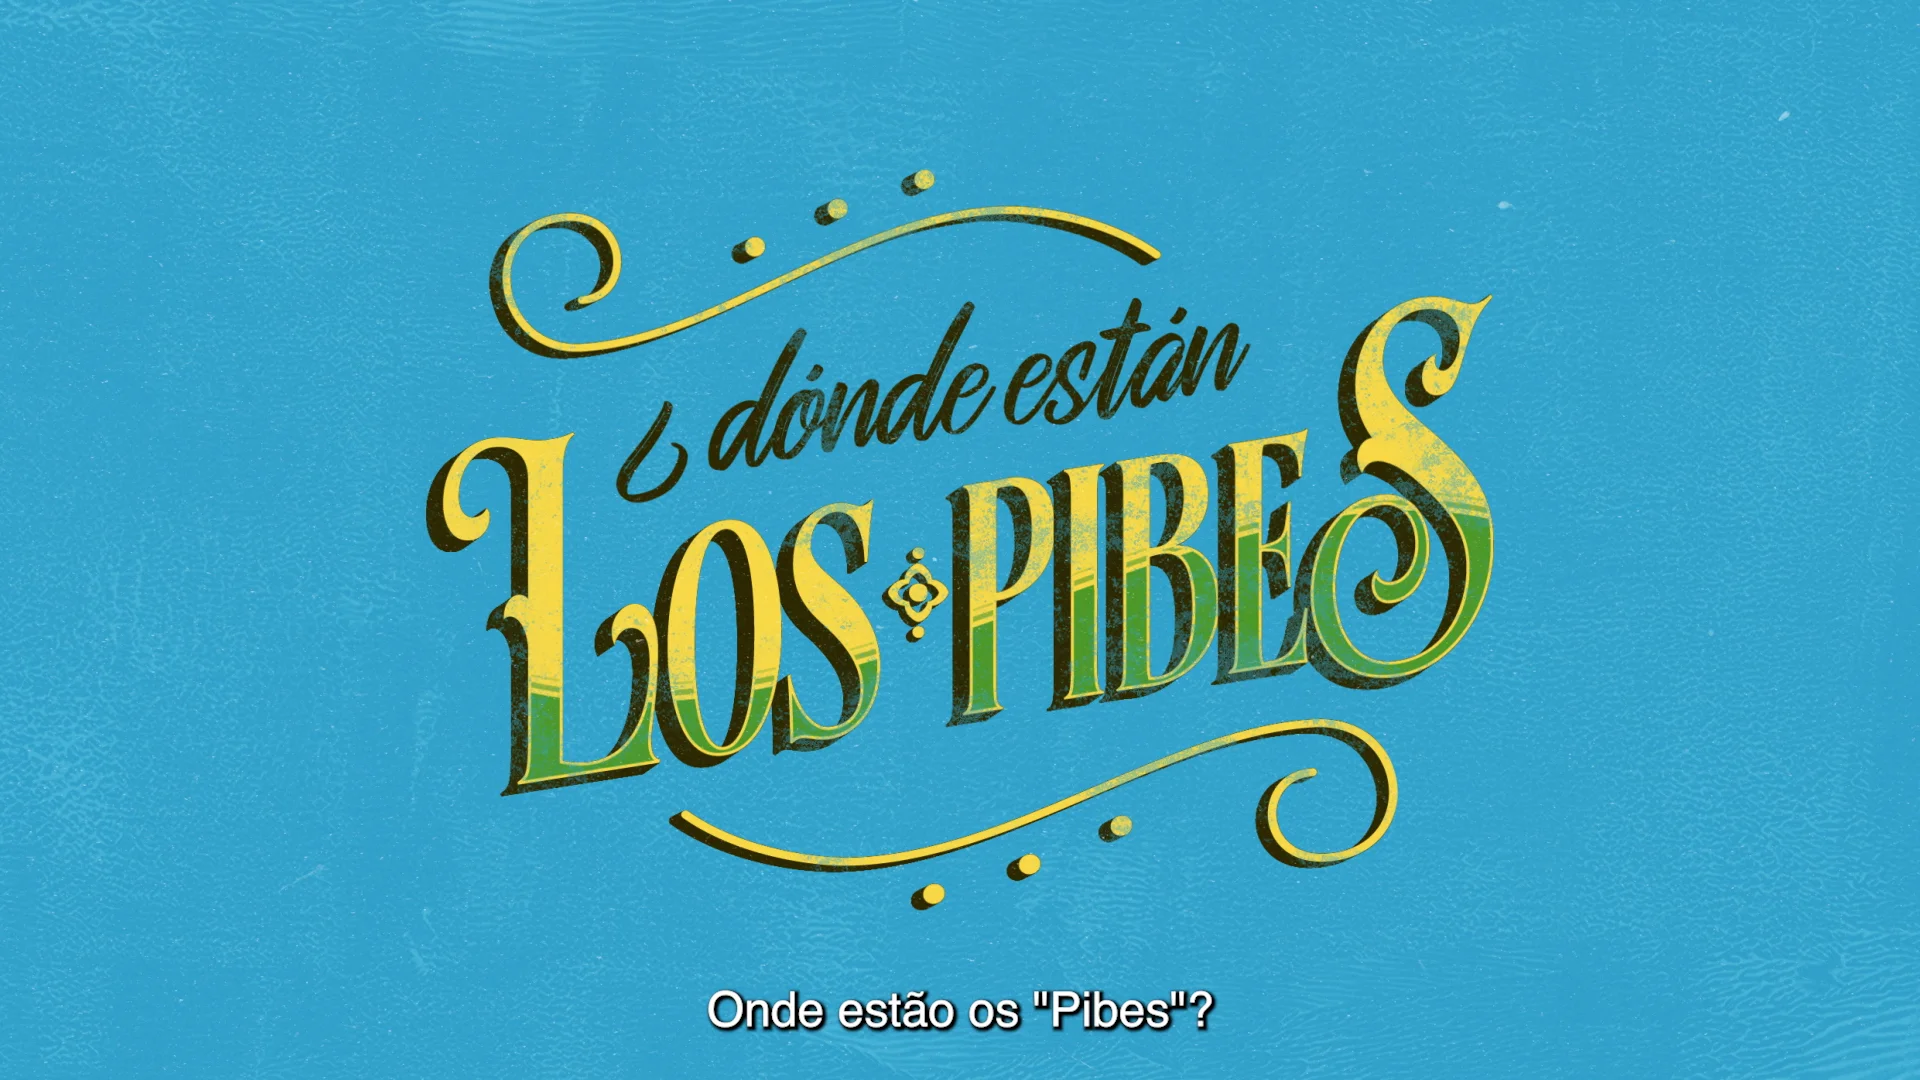 Los Pibes - Tec — Google Arts & Culture